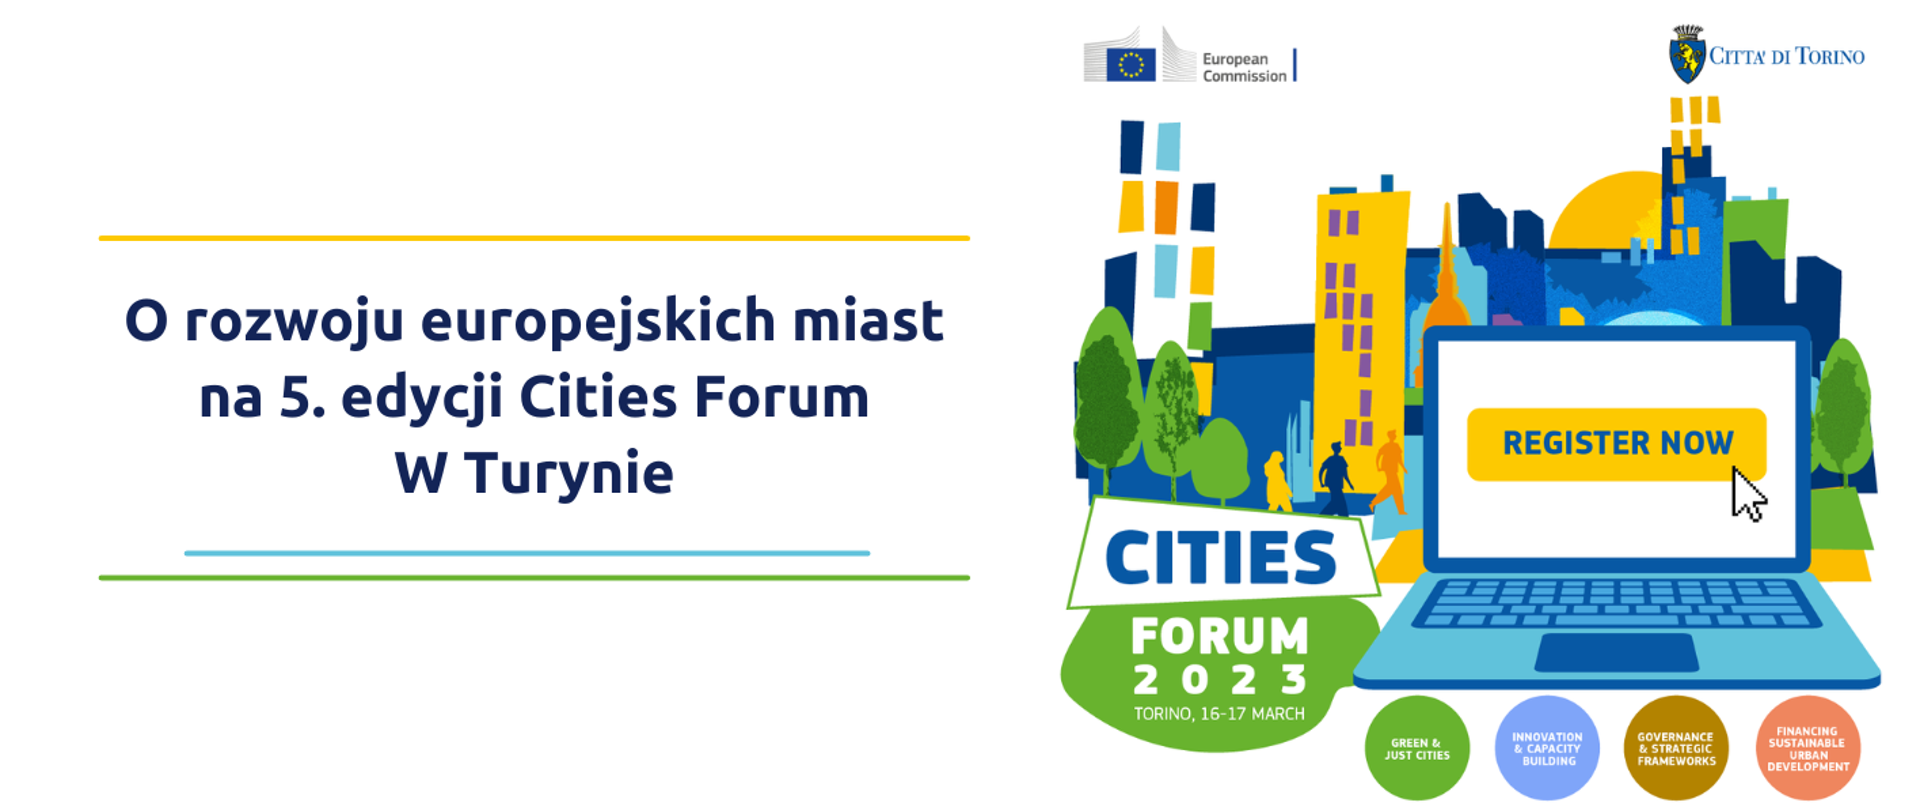 O rozwoju europejskich miast na 5. edycji Cities Forum 